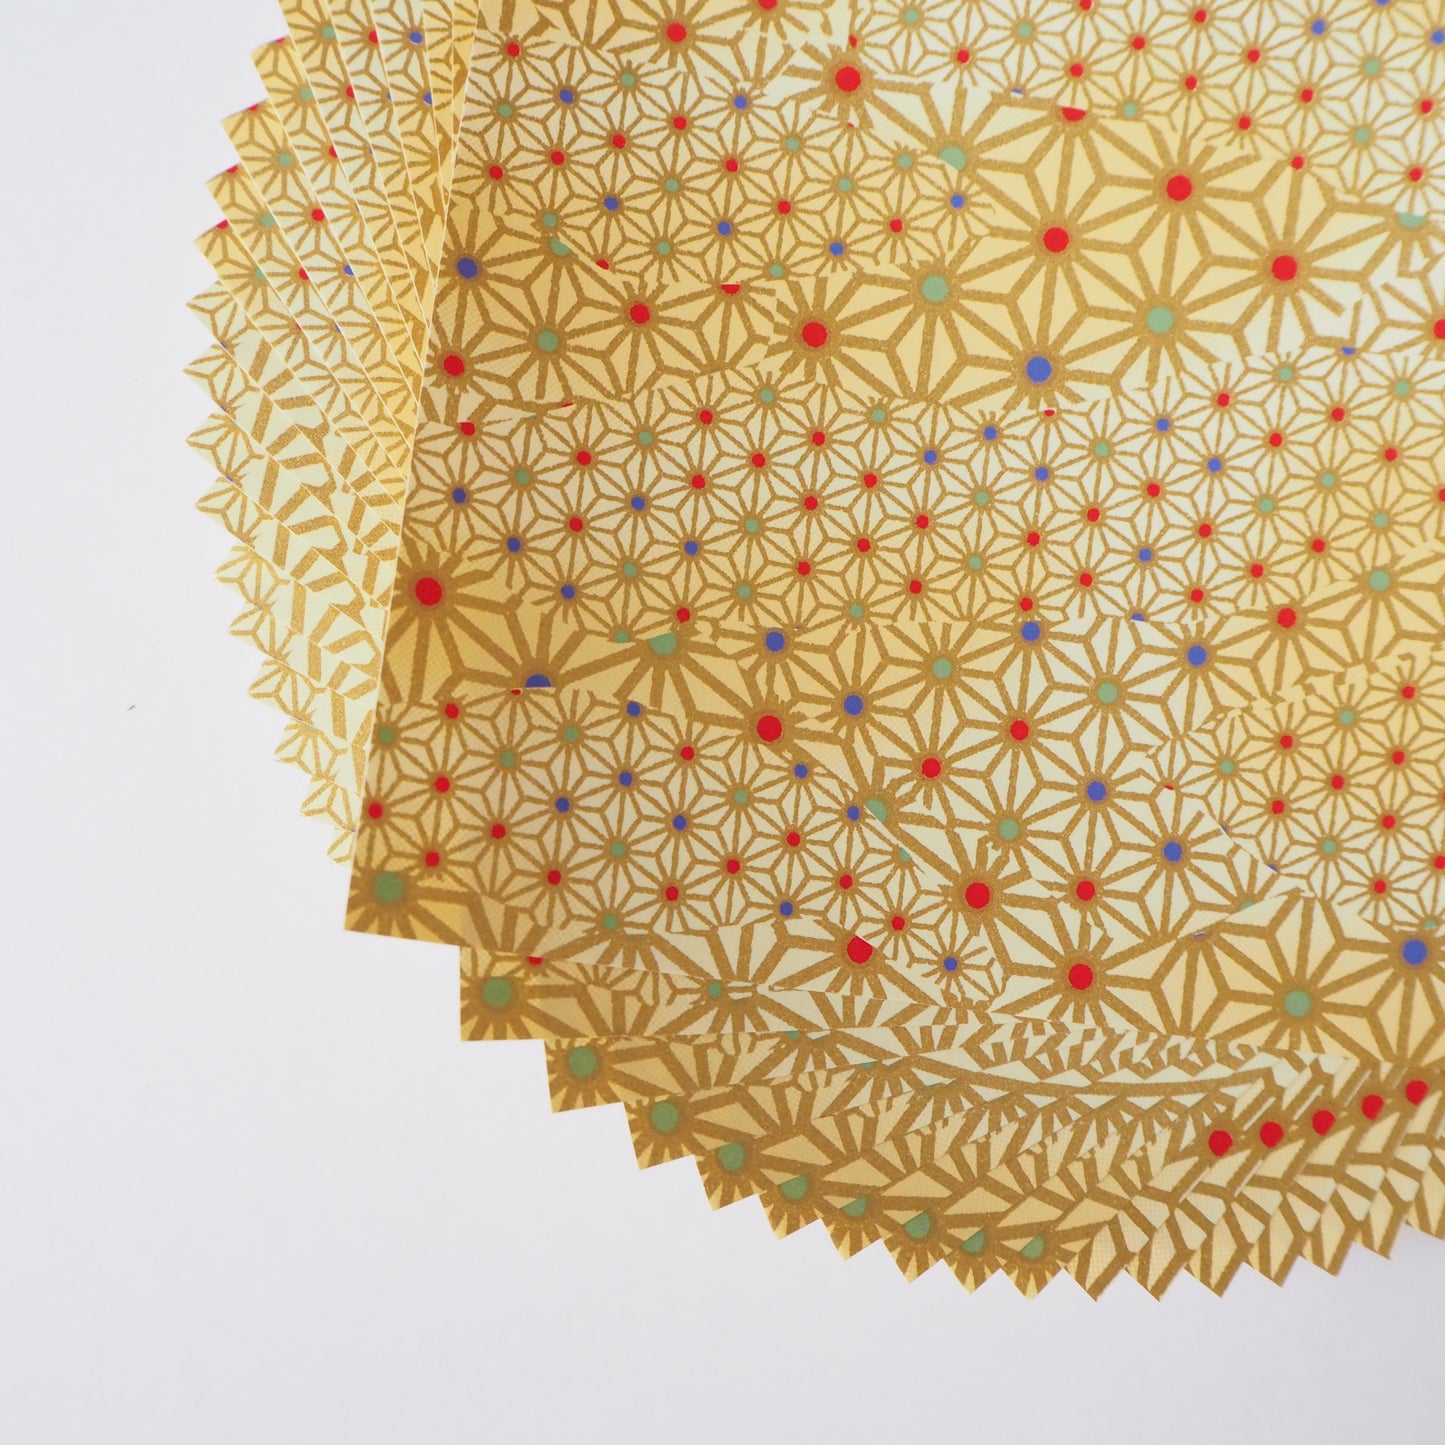 Pack of 20 Sheets 14x14cm Yuzen Washi Origami Paper HZ-033 - Klimt Gold Hemp Leaf